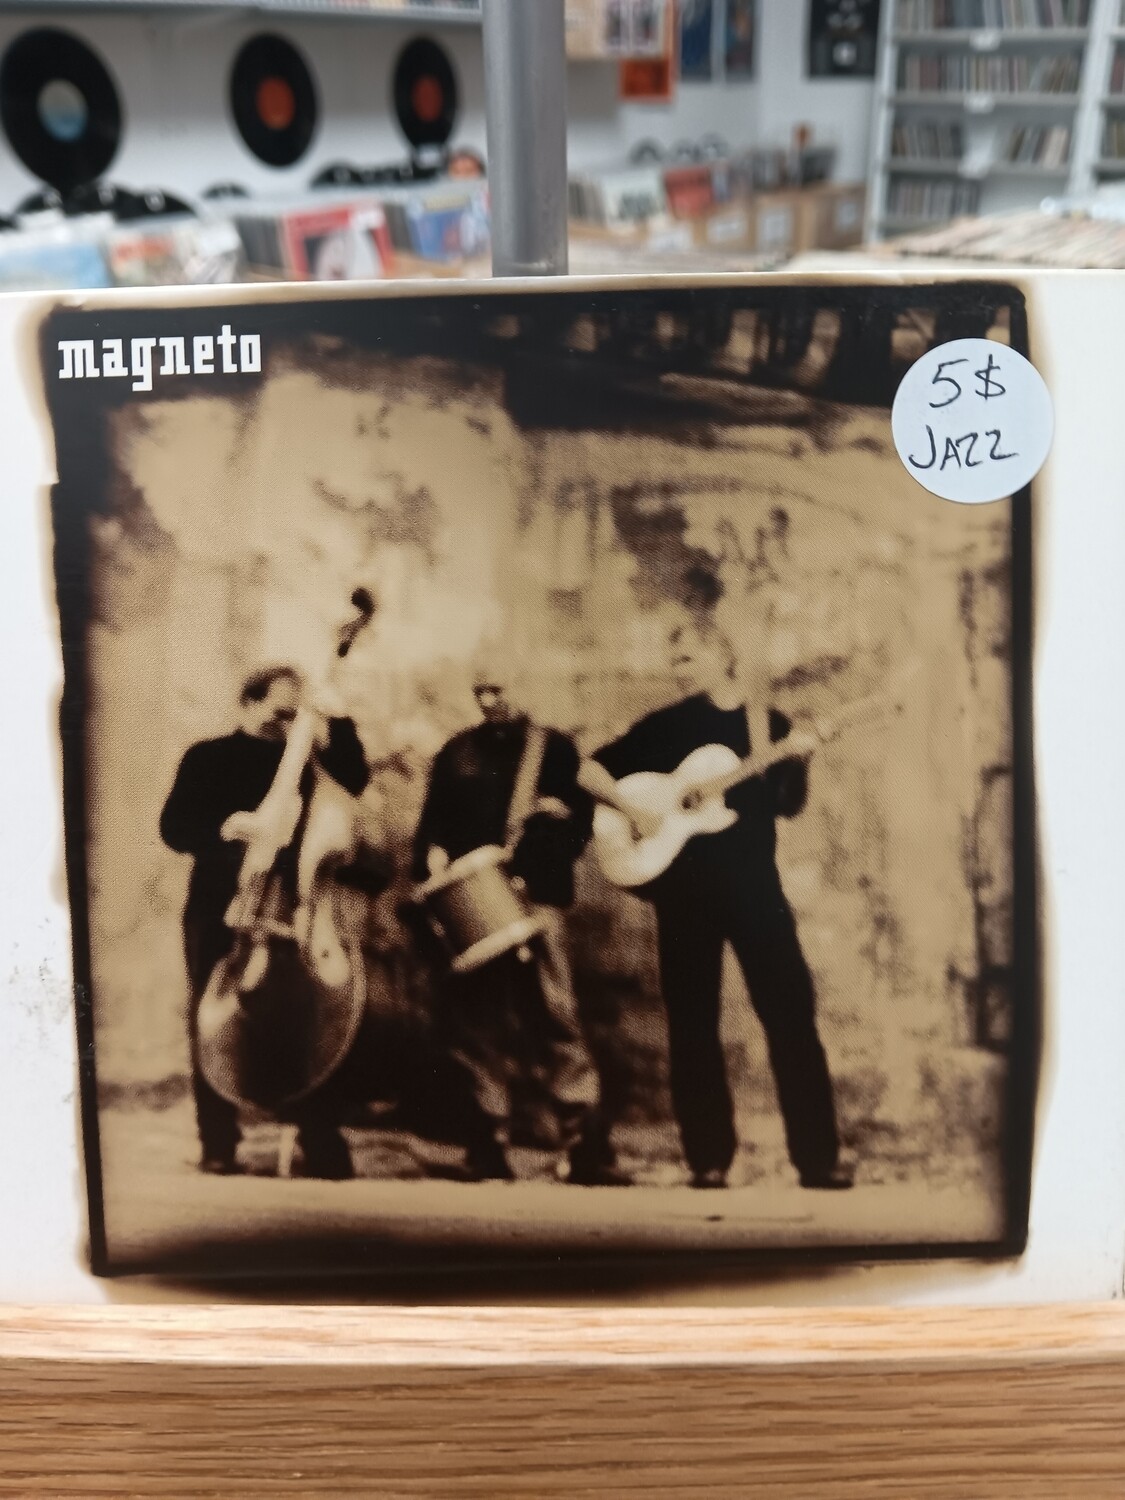 MAGNETO - Magneto (CD)